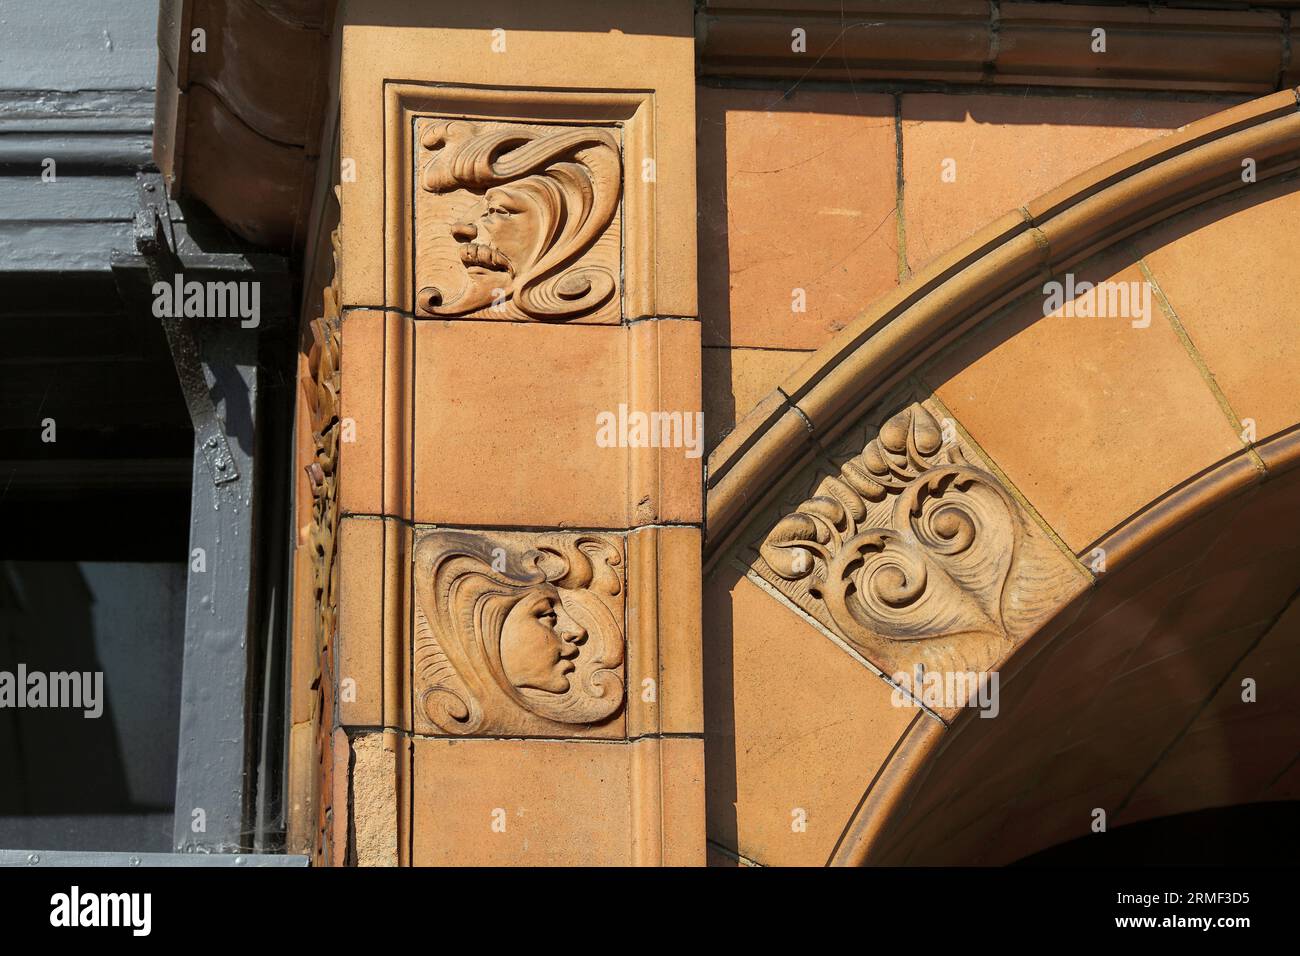 Gros plan des détails sur la façade de l'hippodrome de Great Yarmouth montrant des carreaux de terre cuite avec des dessins Art nouveau. Banque D'Images